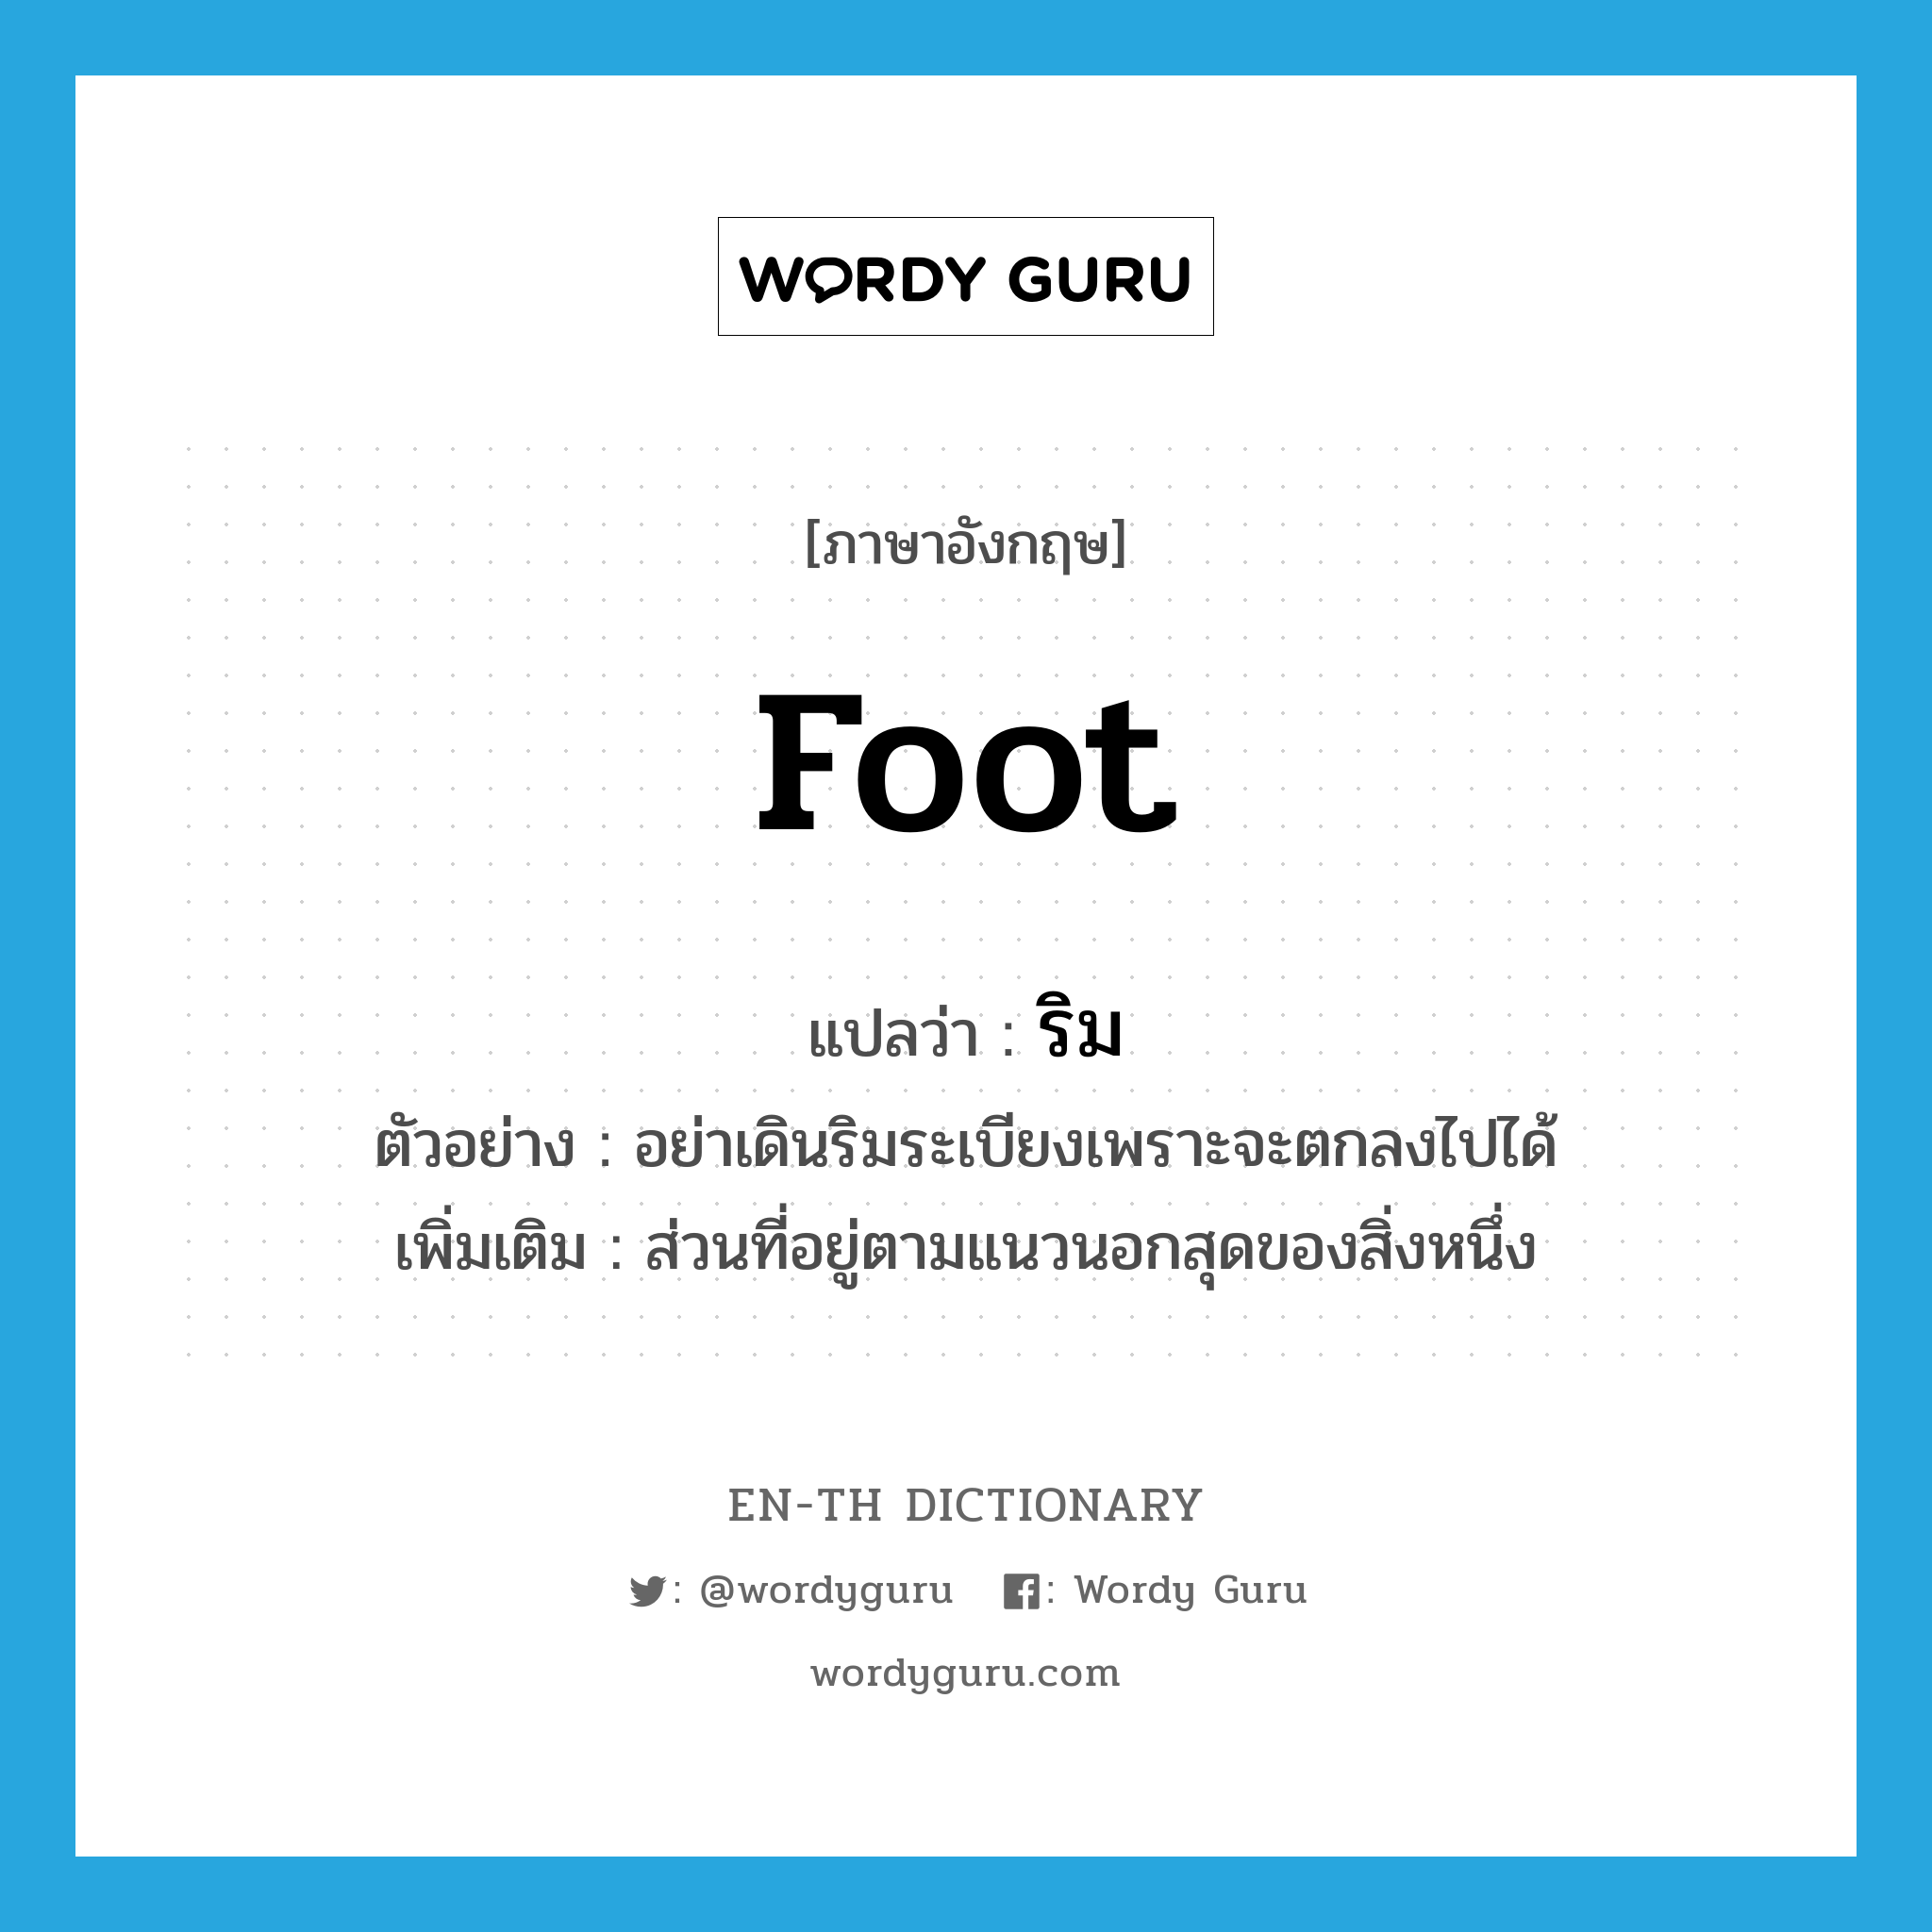 foot แปลว่า?, คำศัพท์ภาษาอังกฤษ foot แปลว่า ริม ประเภท N ตัวอย่าง อย่าเดินริมระเบียงเพราะจะตกลงไปได้ เพิ่มเติม ส่วนที่อยู่ตามแนวนอกสุดของสิ่งหนึ่ง หมวด N